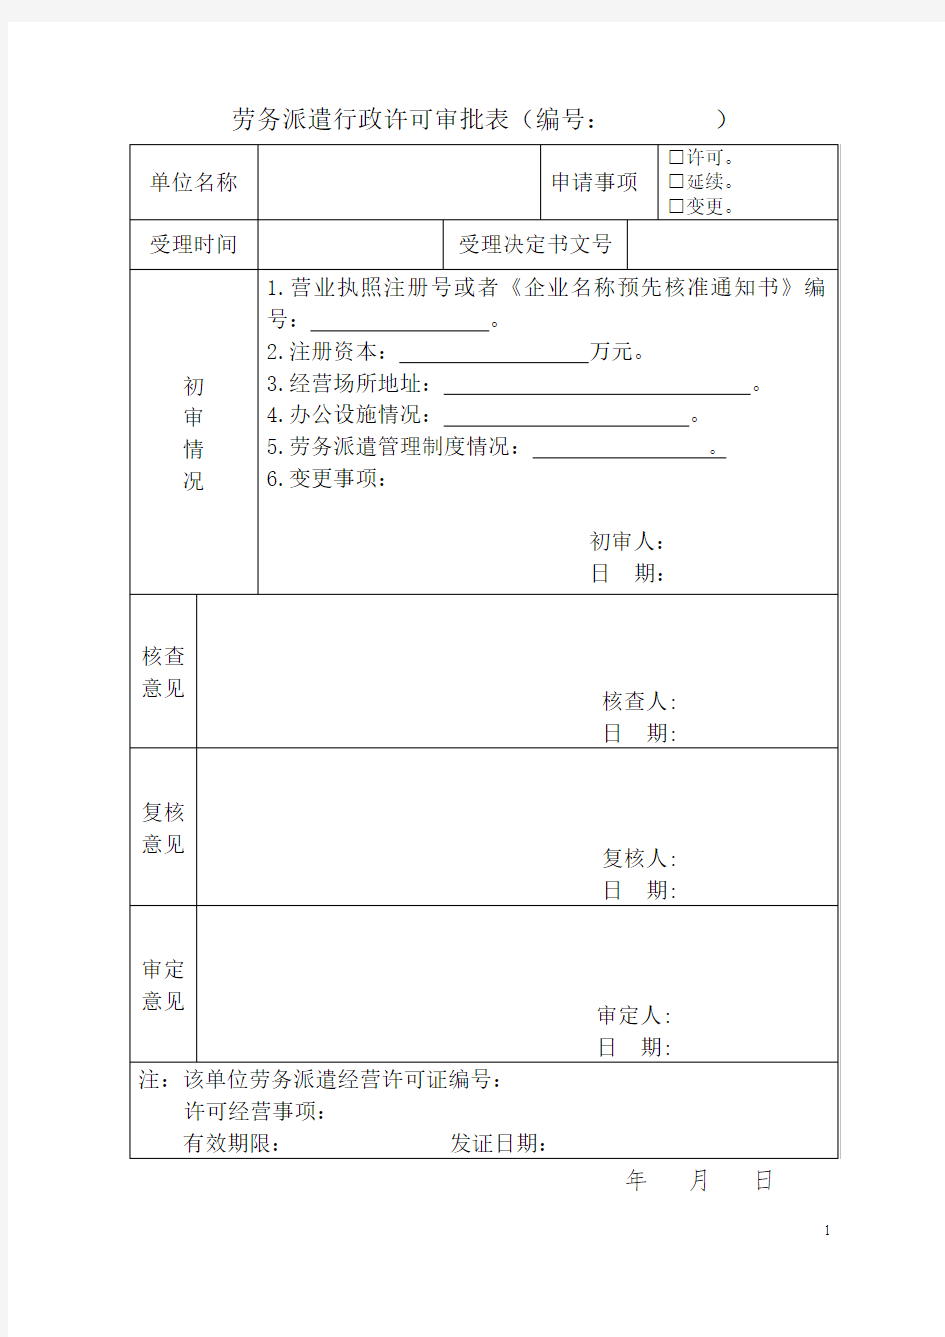 劳务派遣行政许可审批表2015(1)